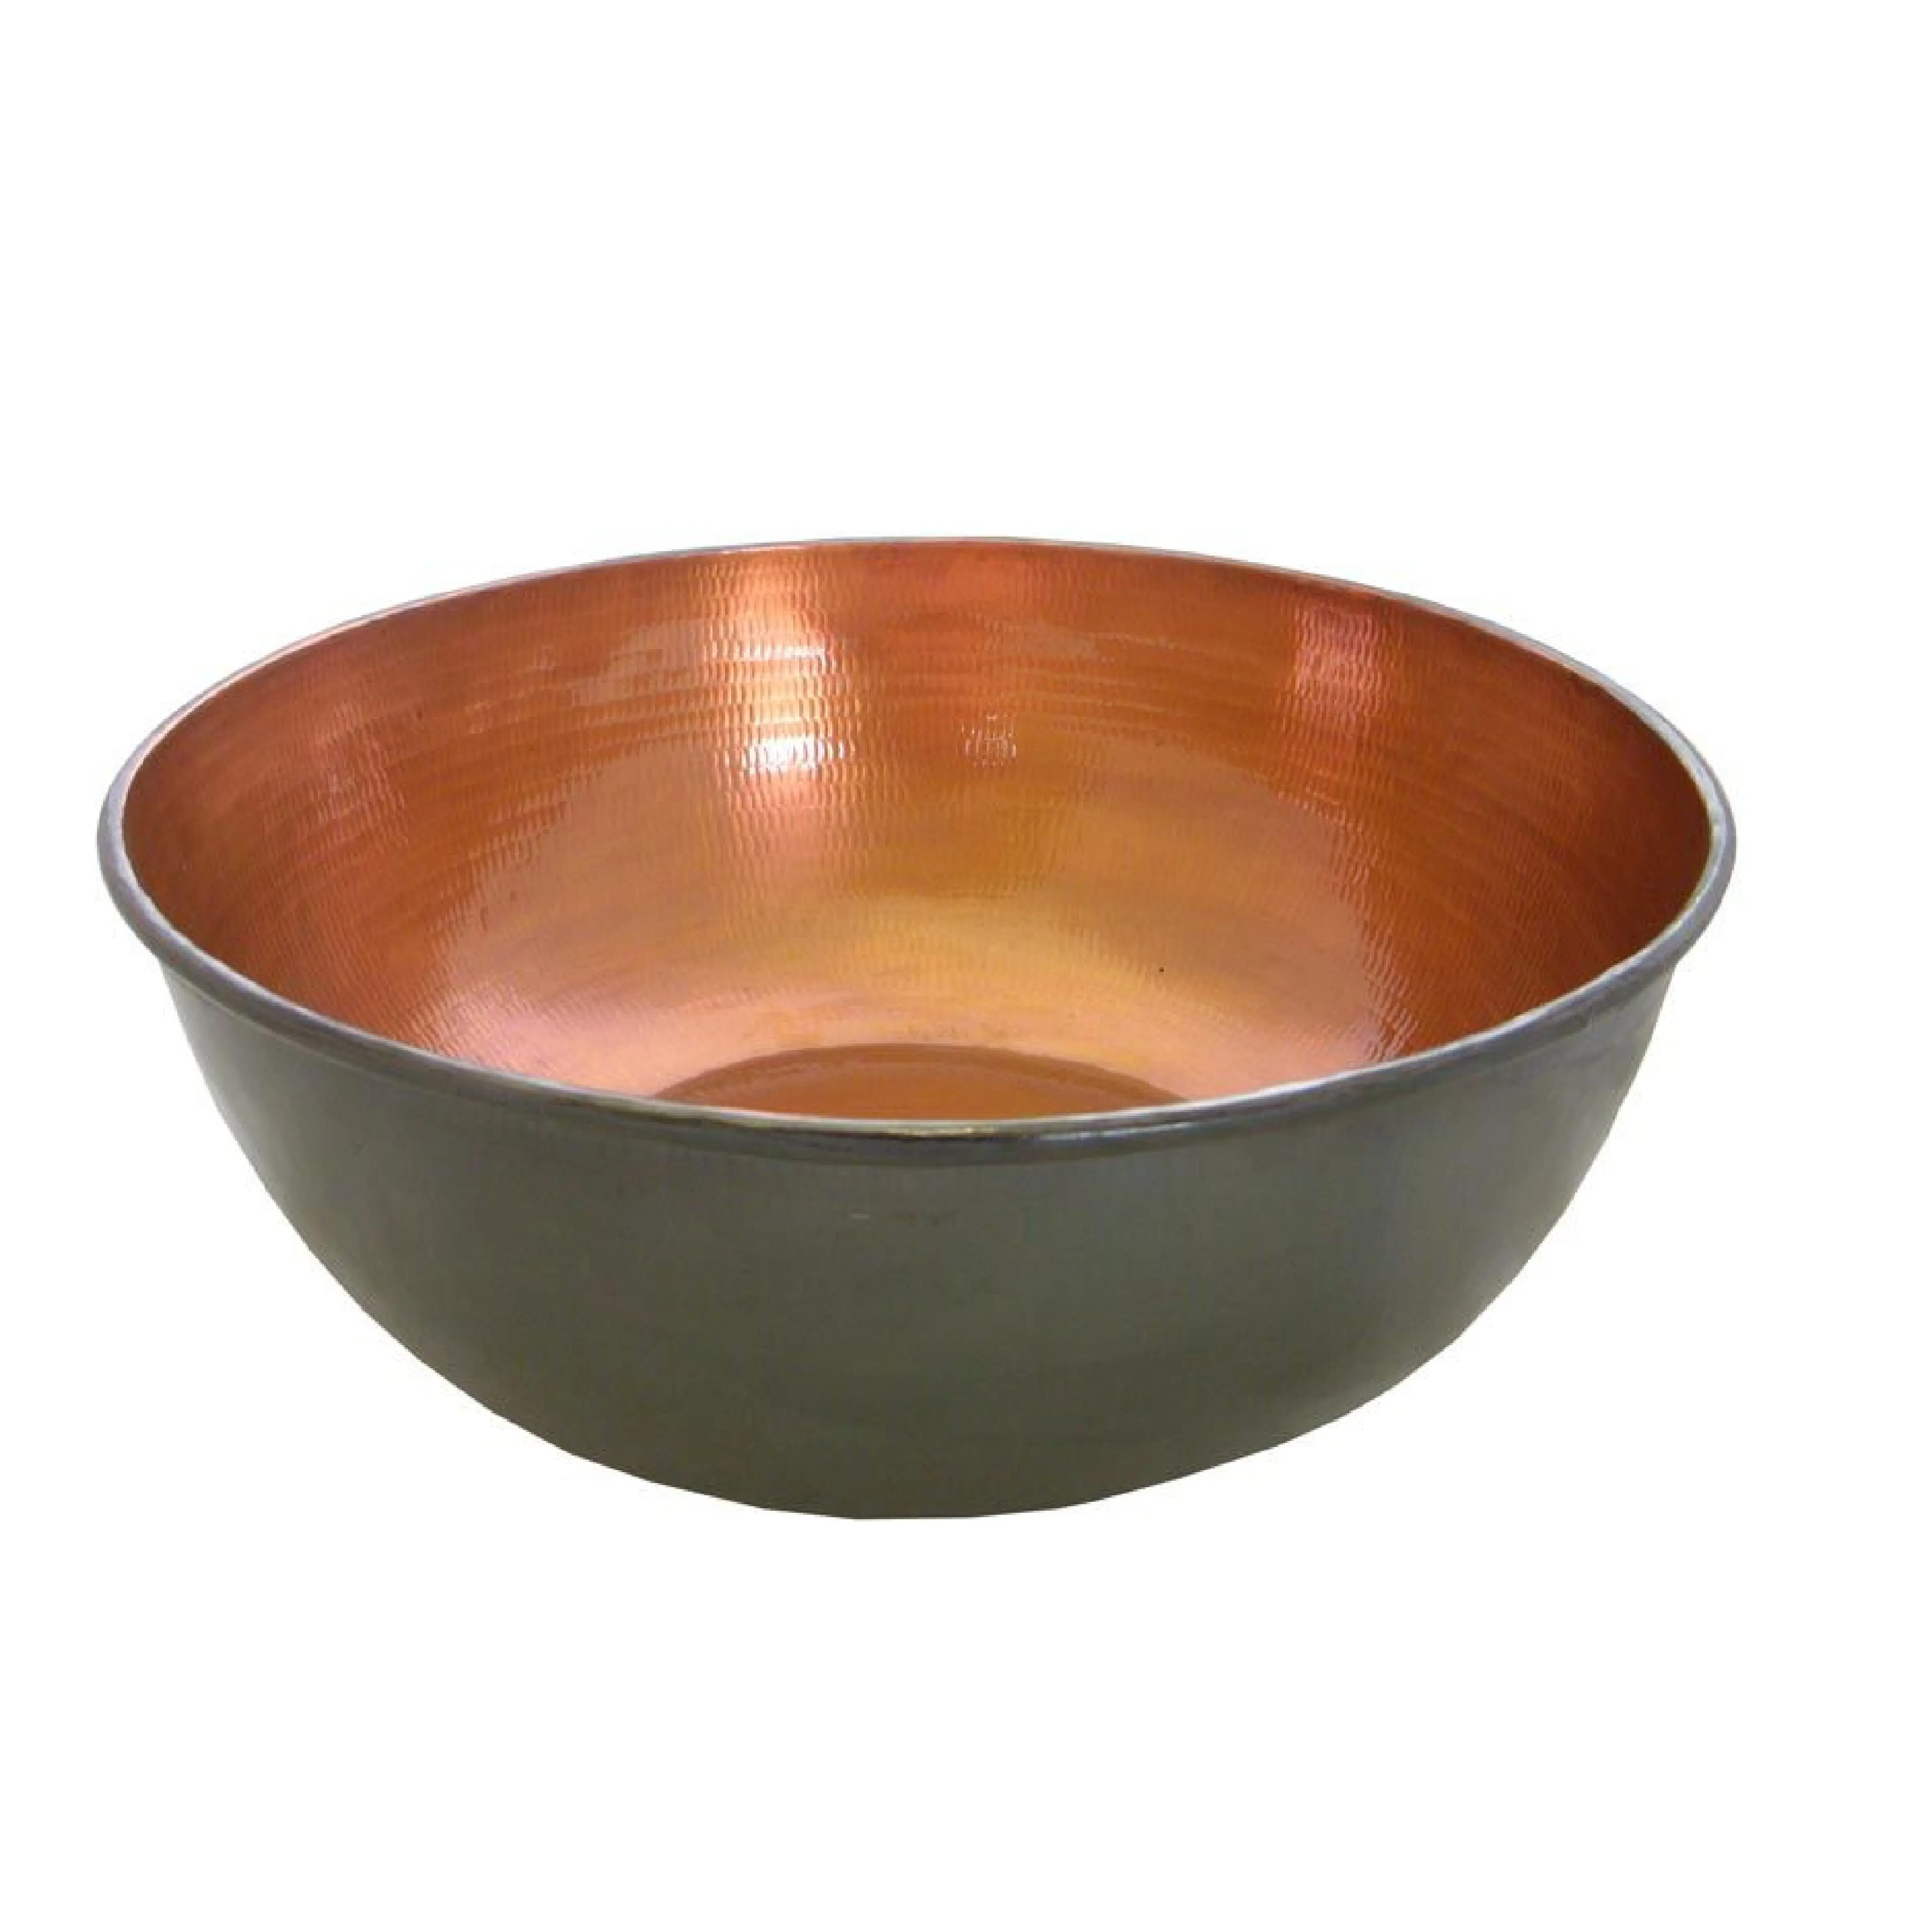 Cuivre noir avec bol de service de forme ronde Top vente bol de service en cuivre pour la décoration de Table à manger